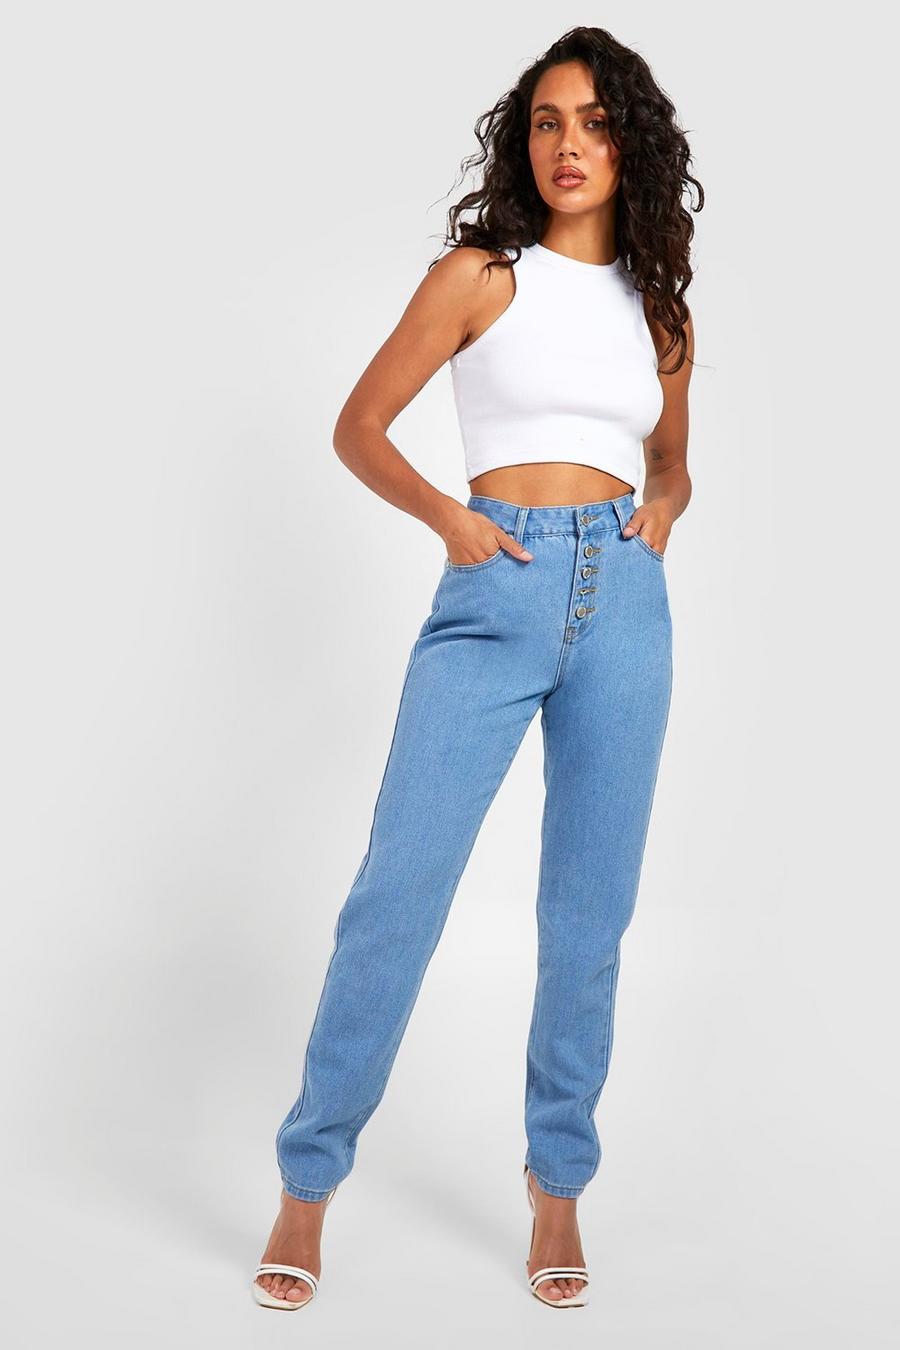 דהוי קלות azul ג'ינס בייסיק בגזרת מאם גבוהה עם כפתורים בחזית